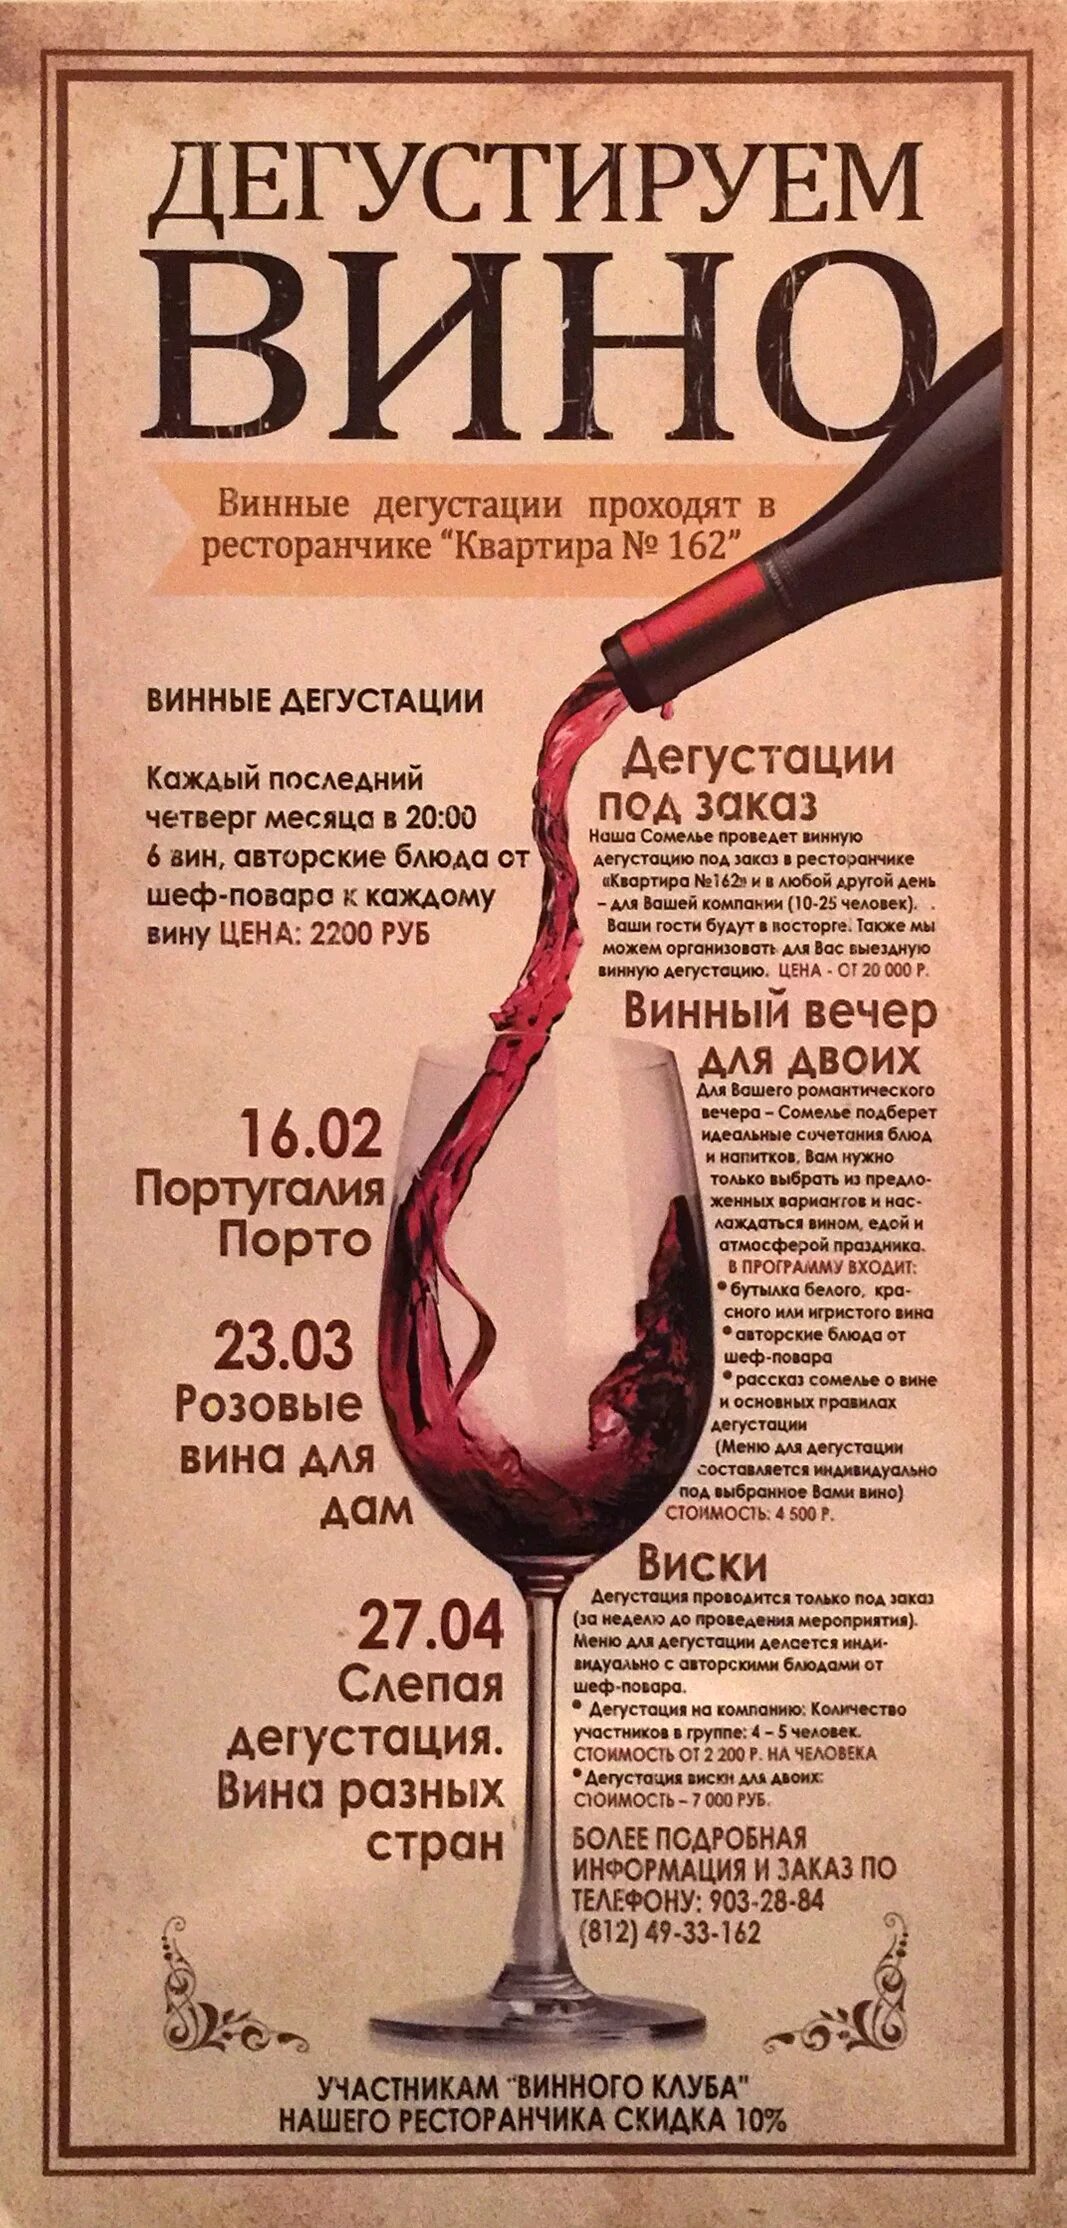 Всему вино виной текст. Вино реклама. Реклама о вине. Рекламный плакат винного магазина. Рекламный слоган для вина.